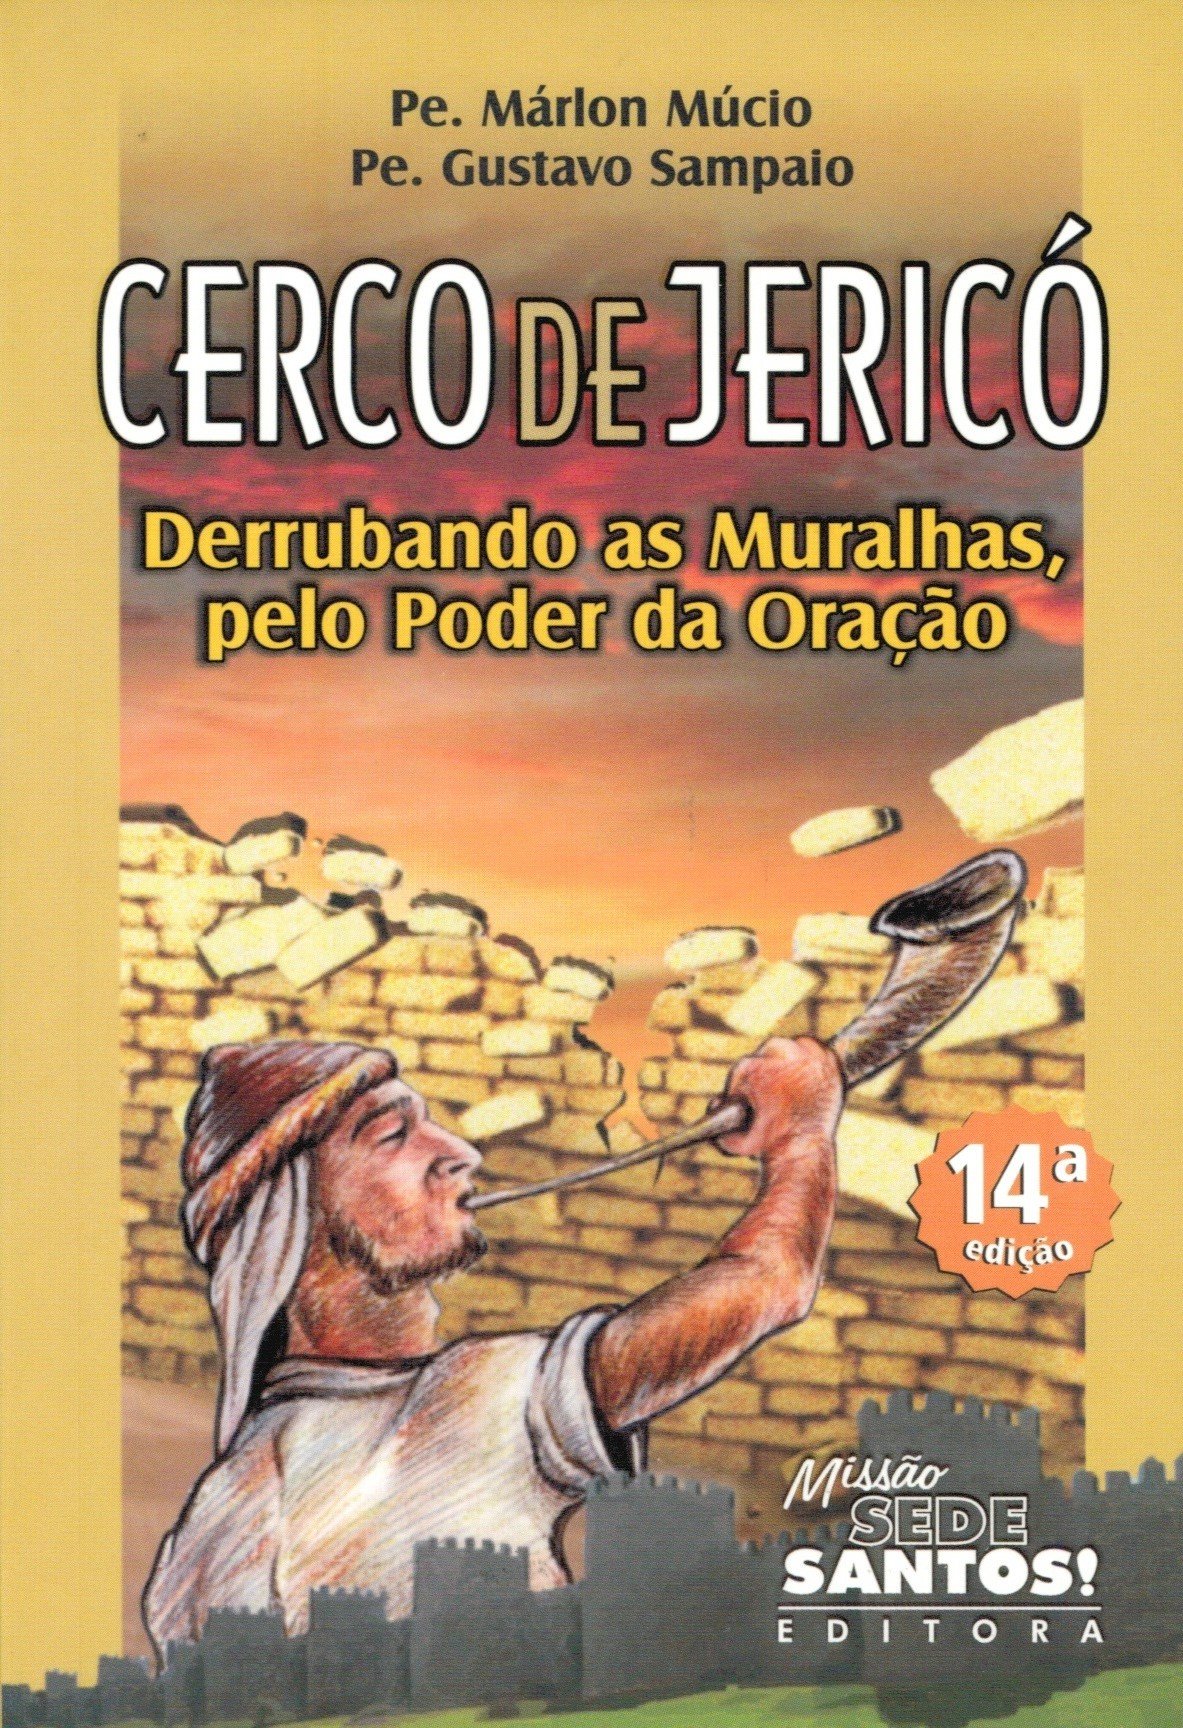 9788564424210 - CERCO DE JERICO DERRUBANDO AS MURALHAS PELO PODER DA ORACAO 59G EDITORA MISSÃO SEDE SANTOS